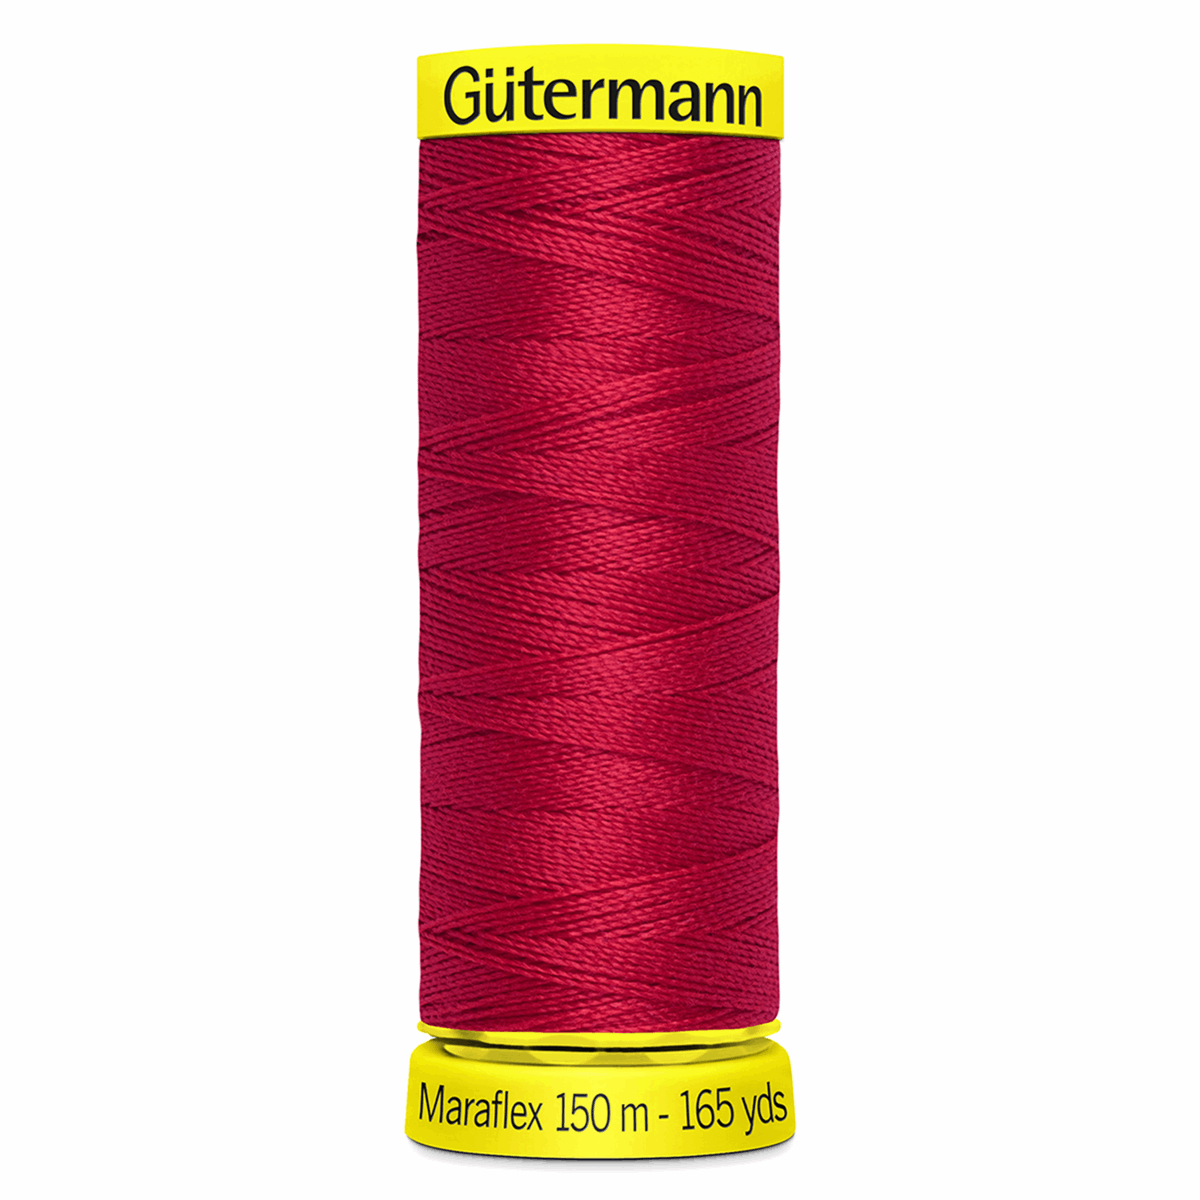 Gutermann Maraflex Elastic Sewing Thread 150m Red 156